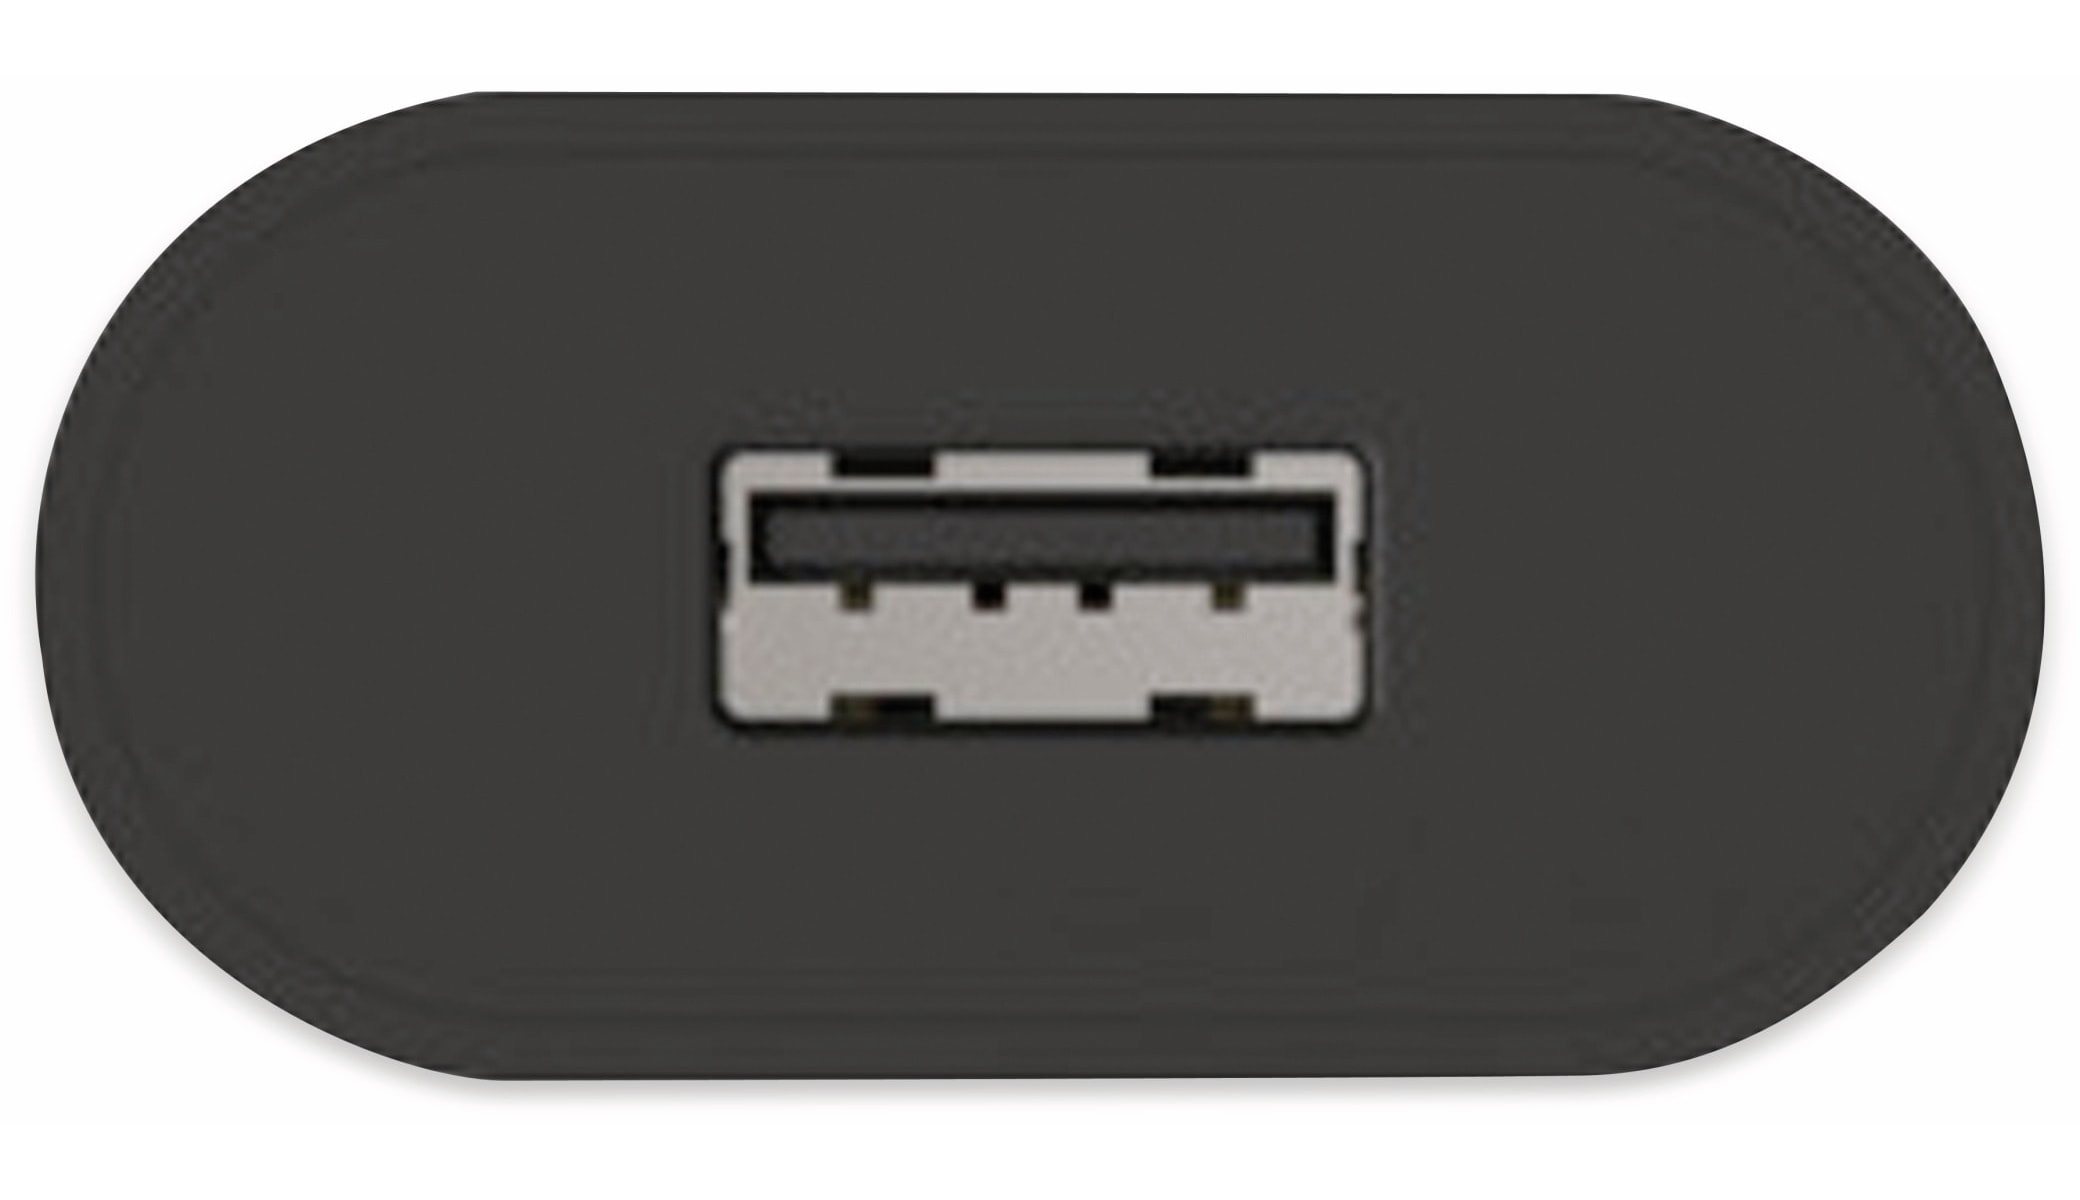 ANSMANN USB-Ladegerät HC105, 5 V, 1 A, schwarz